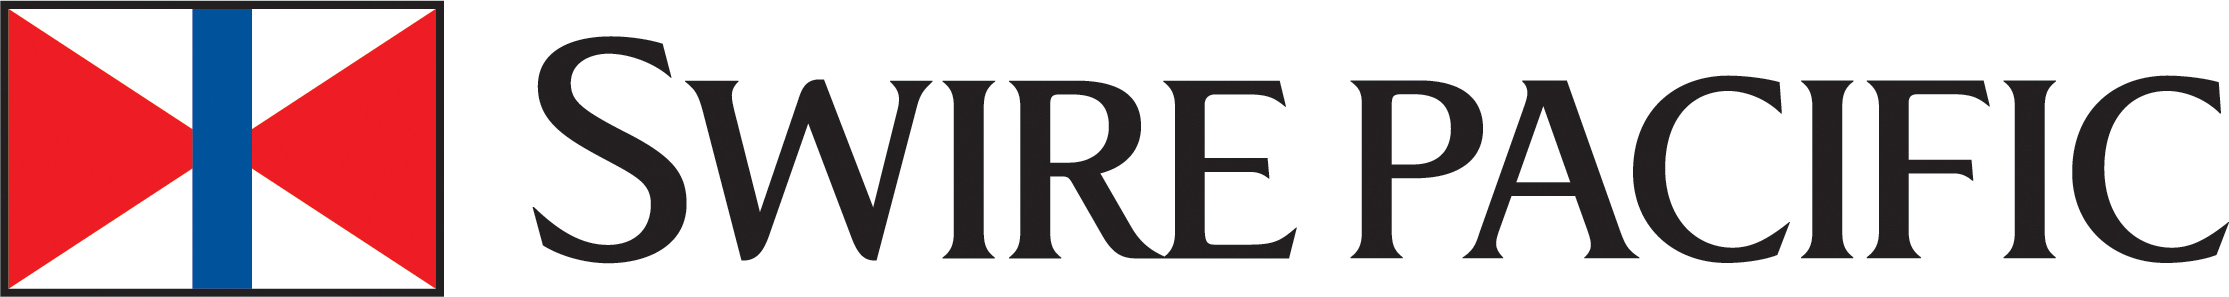 Swire Pacific Brand Logo